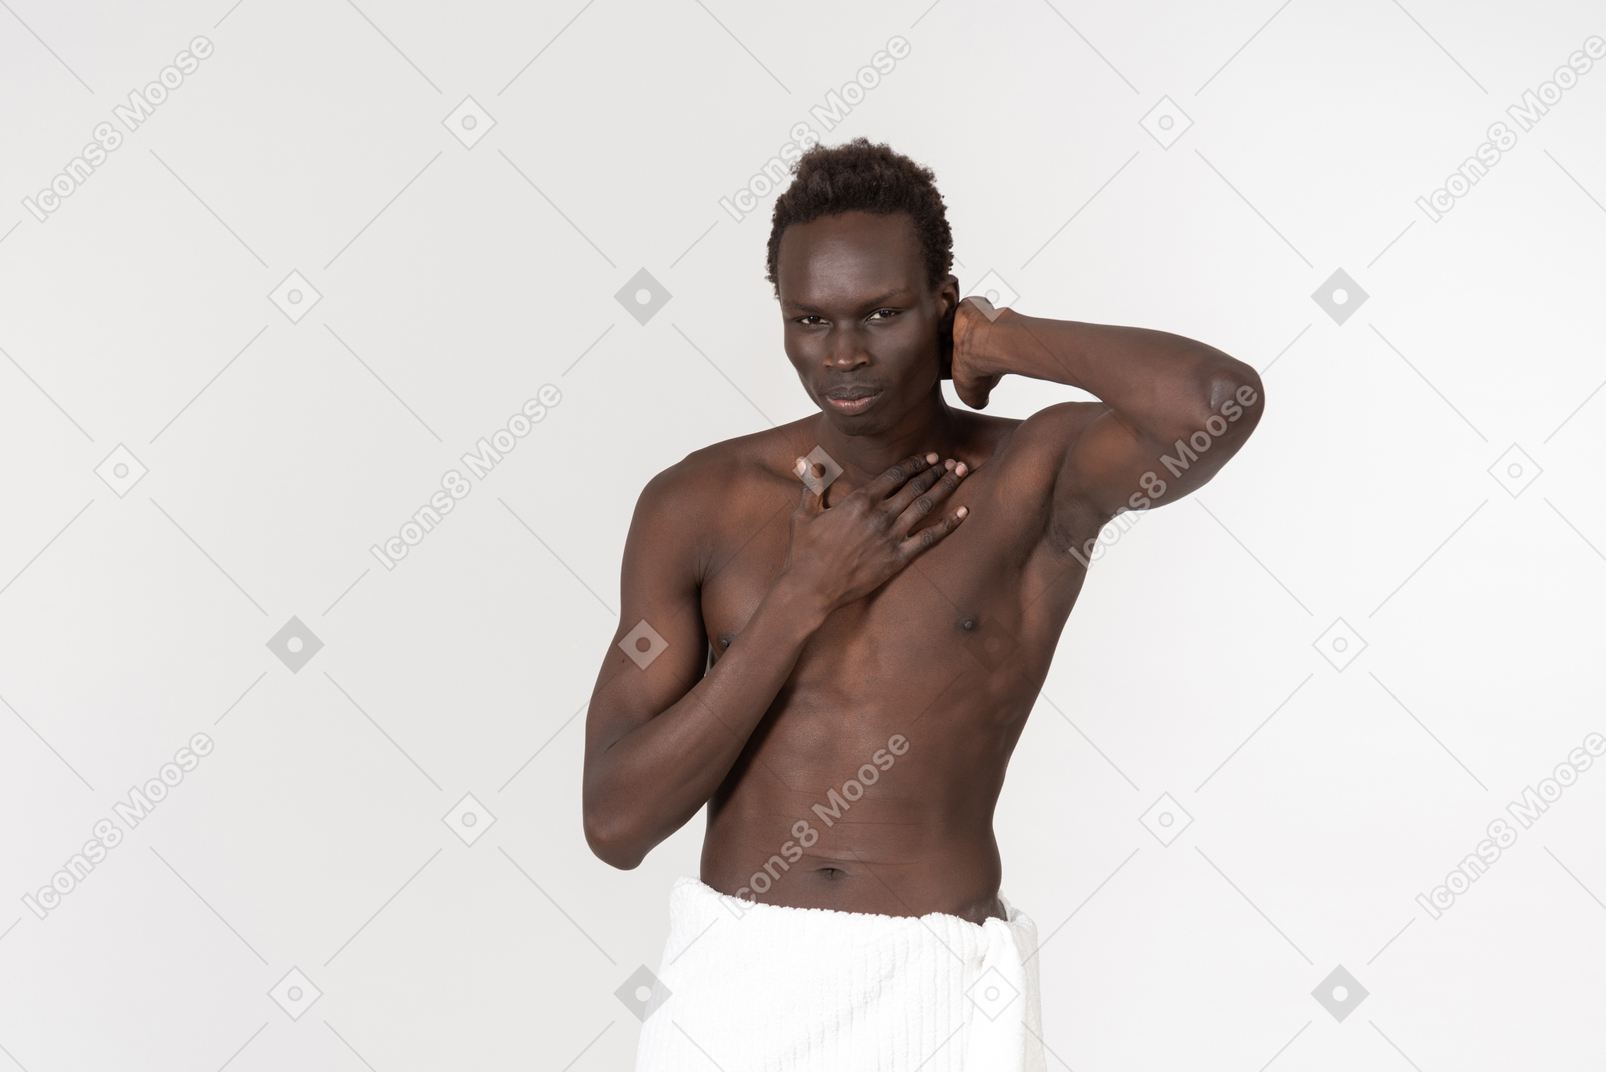 Темнокожий мужчина с белым банным полотенцем на талии делает утреннюю рутину